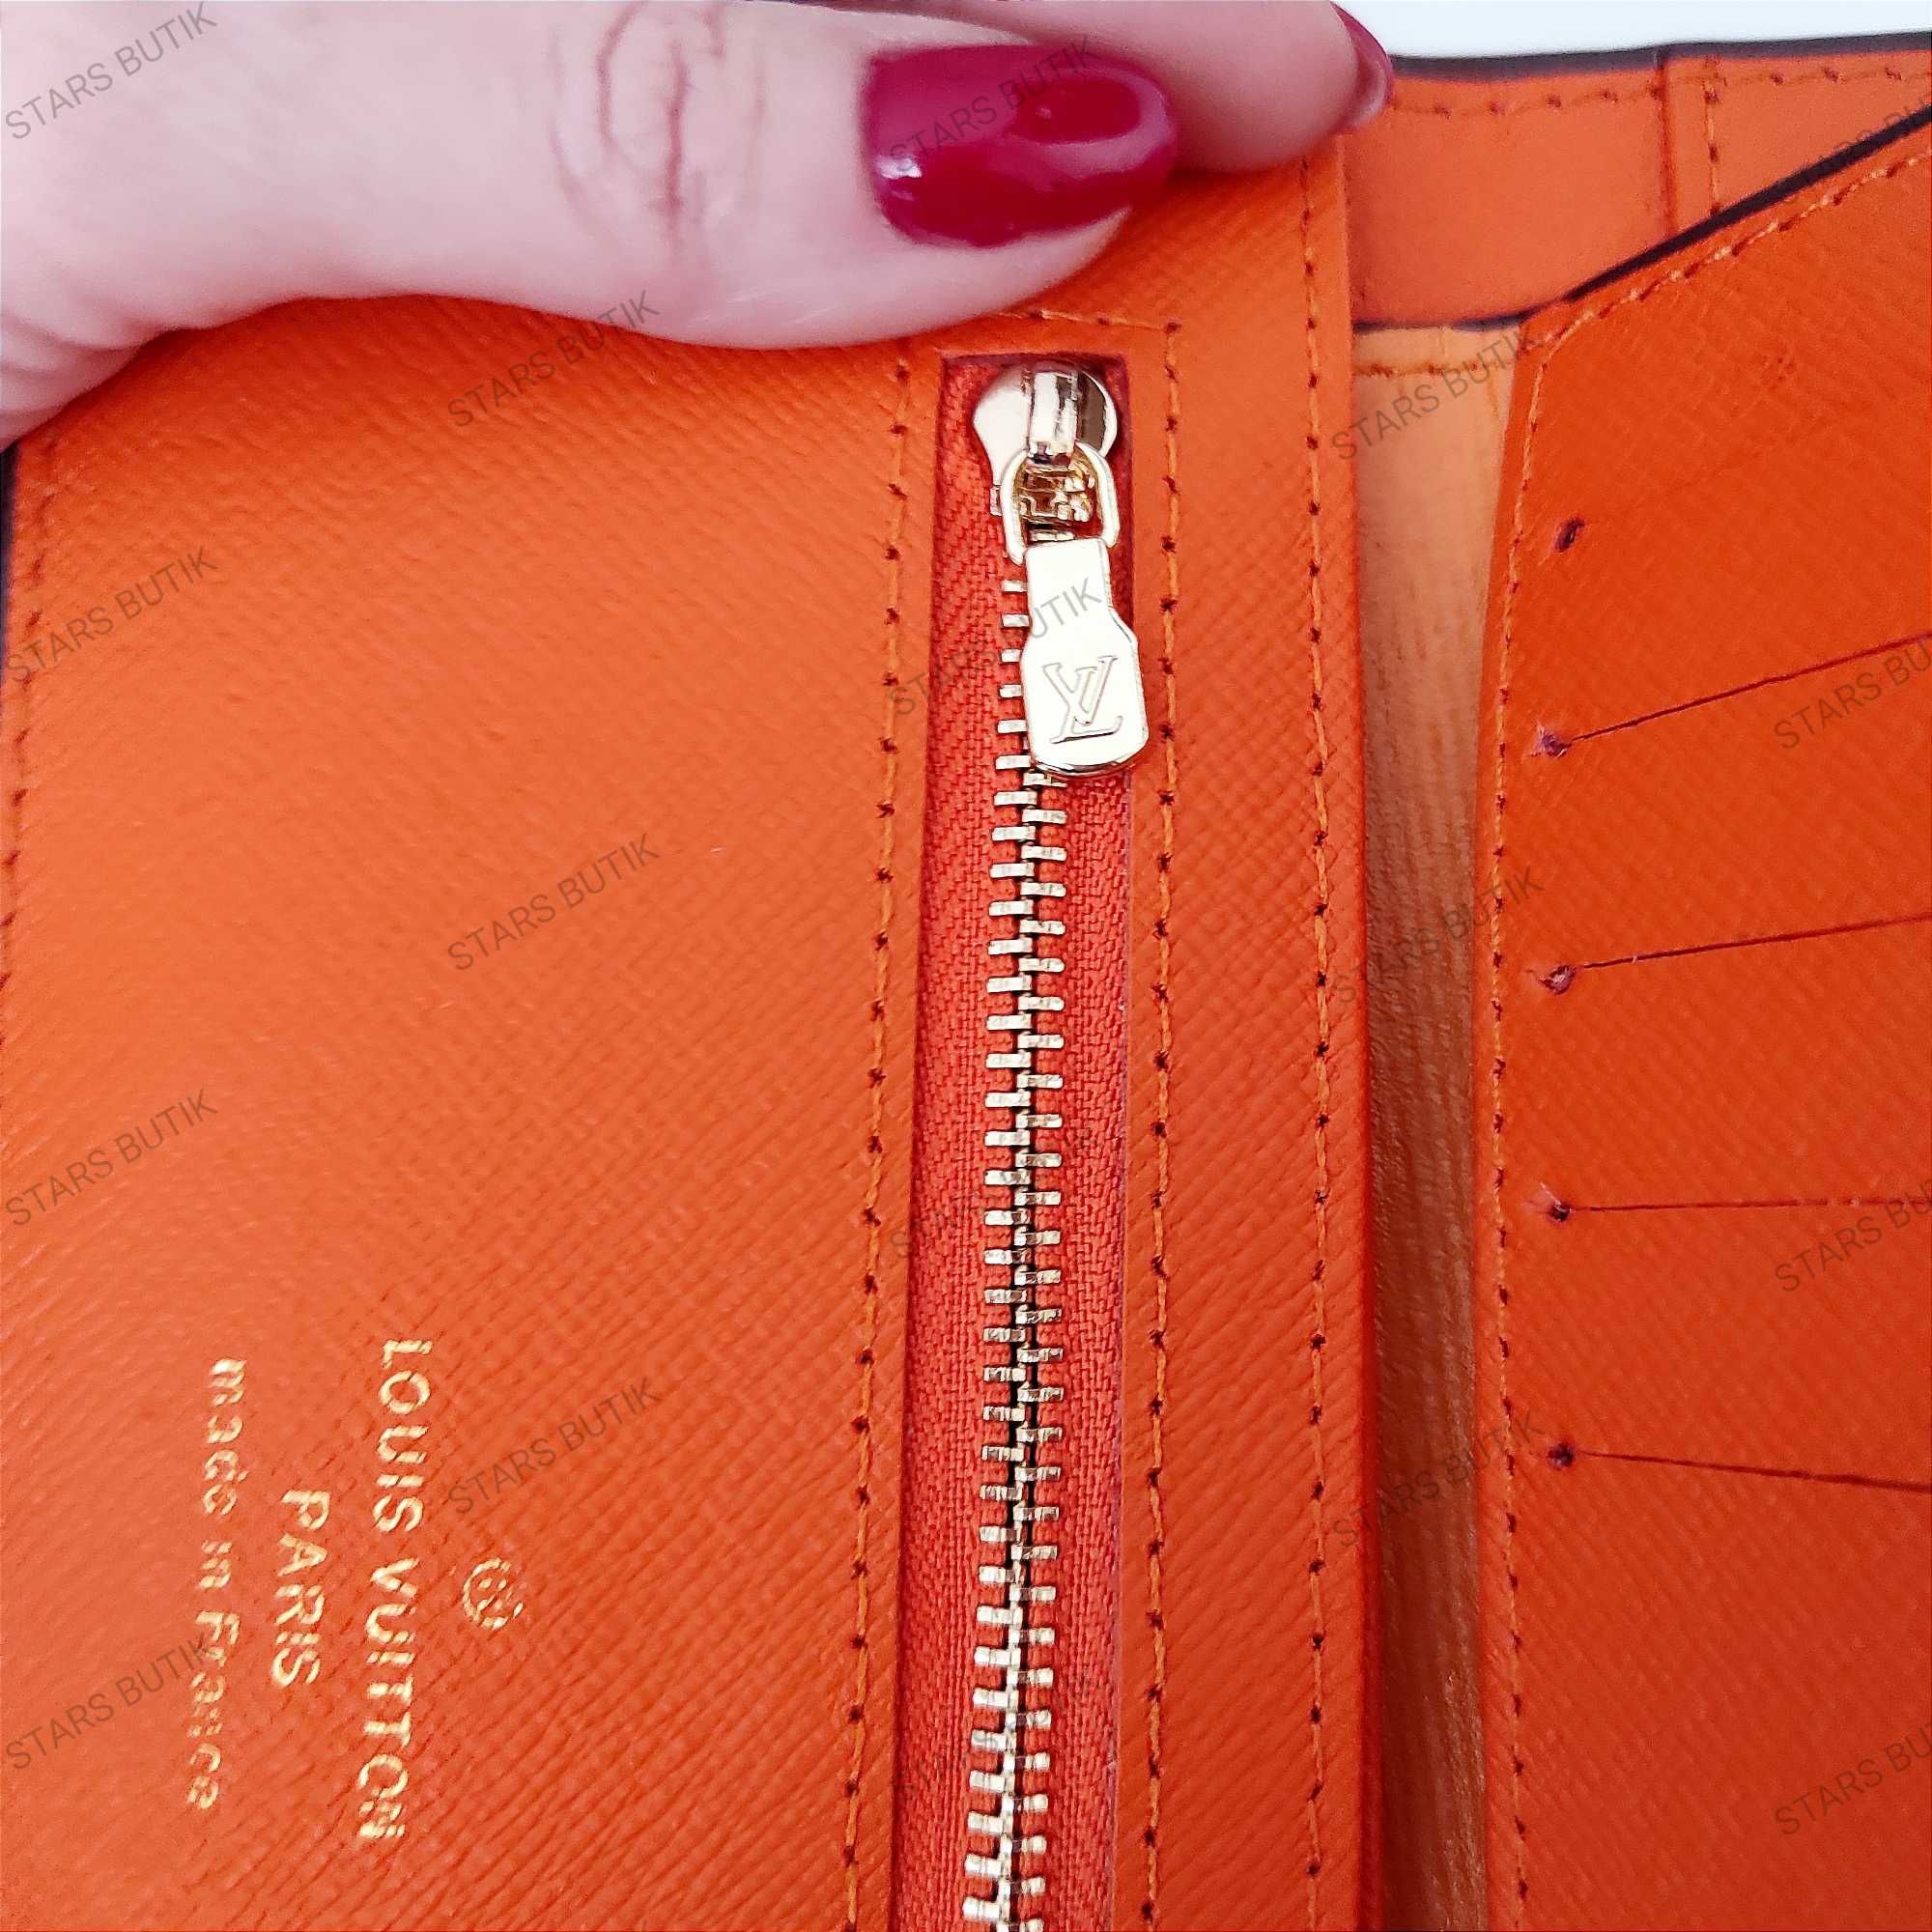 Wyprzedaż damski duży portfel LV epileather czekolada pomarańcz cudo